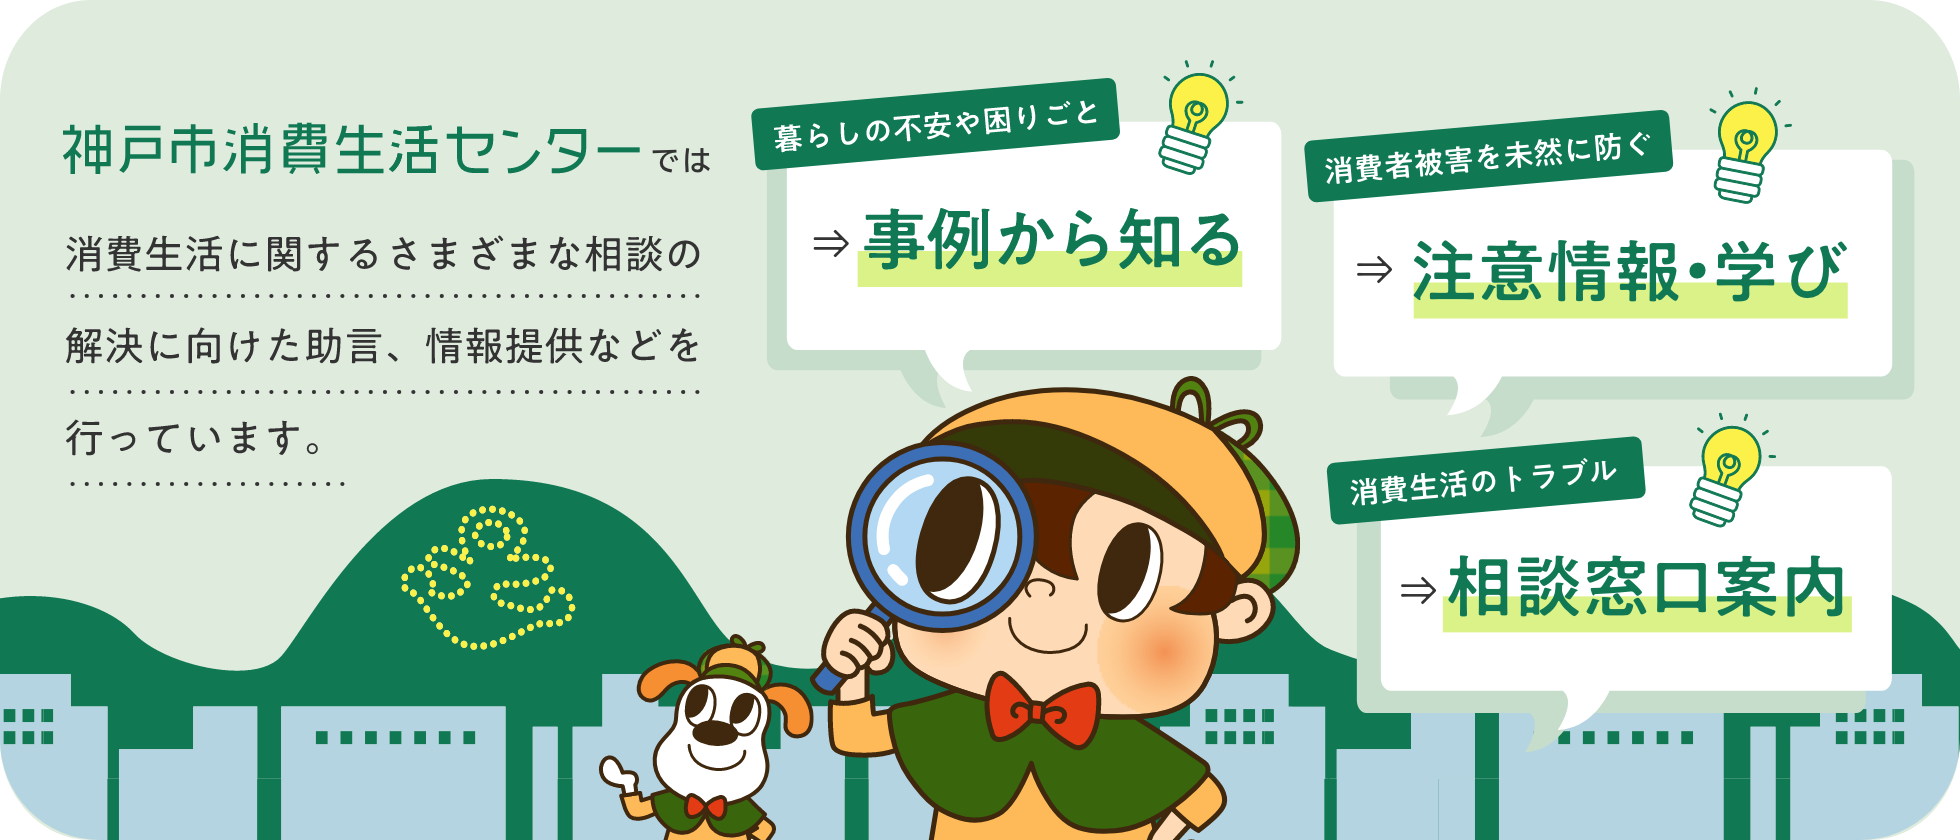 神戸市消費者センターは消費生活のトラブル防止対策をおこなっています